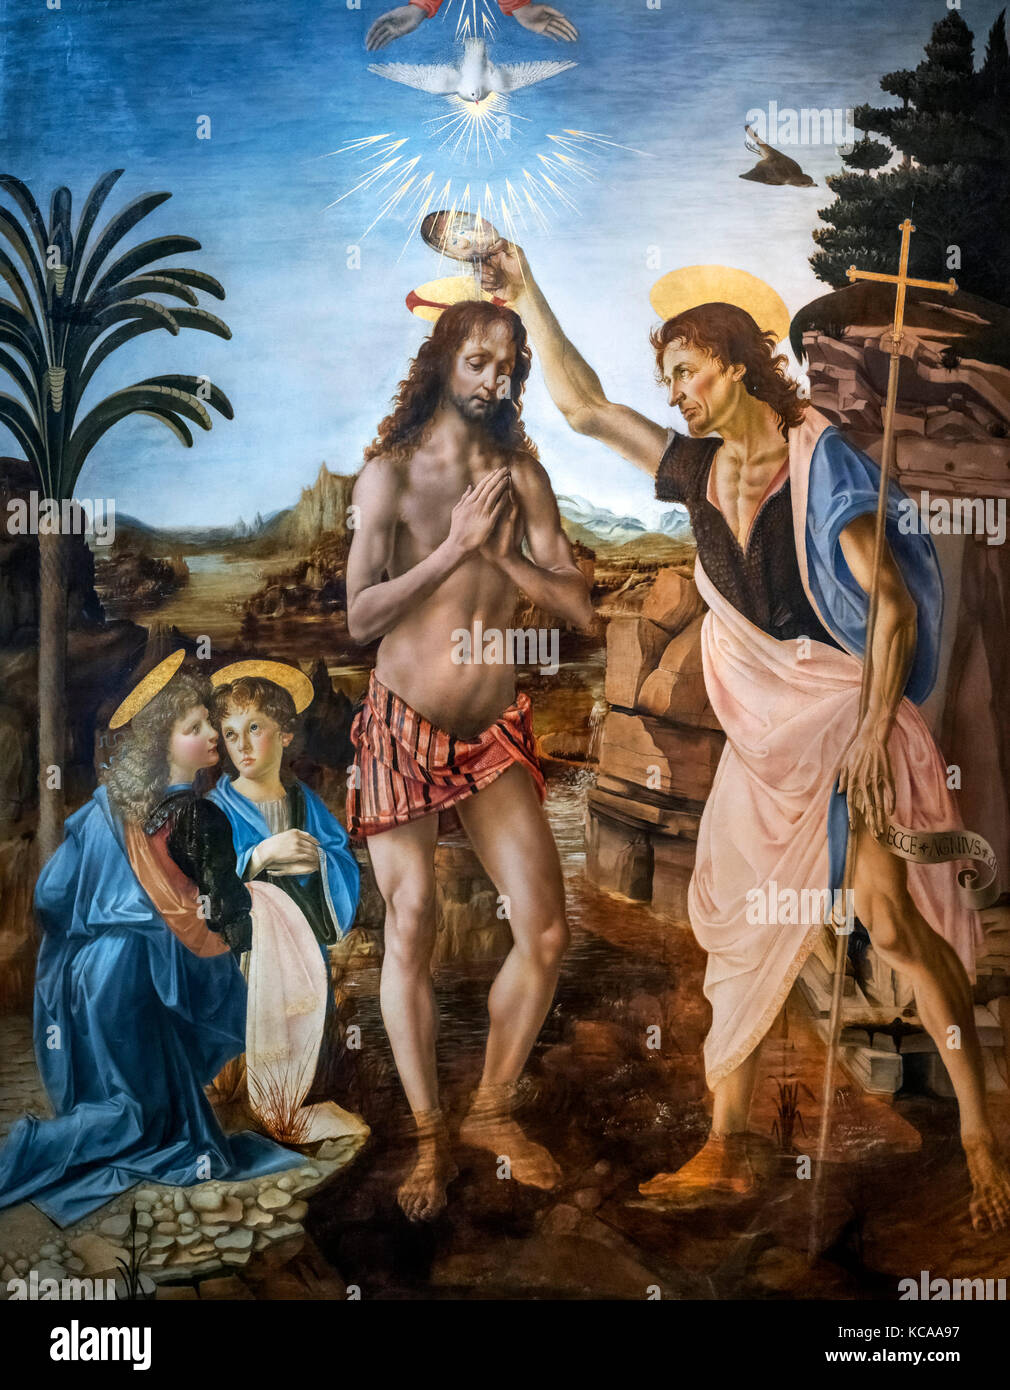 The Baptism of Christ by Andrea del Verrocchio (c. 1435-1488) and Leonardo da Vinci (1452-1519), tempera and oil on panel, c.1470-75 Stock Photo